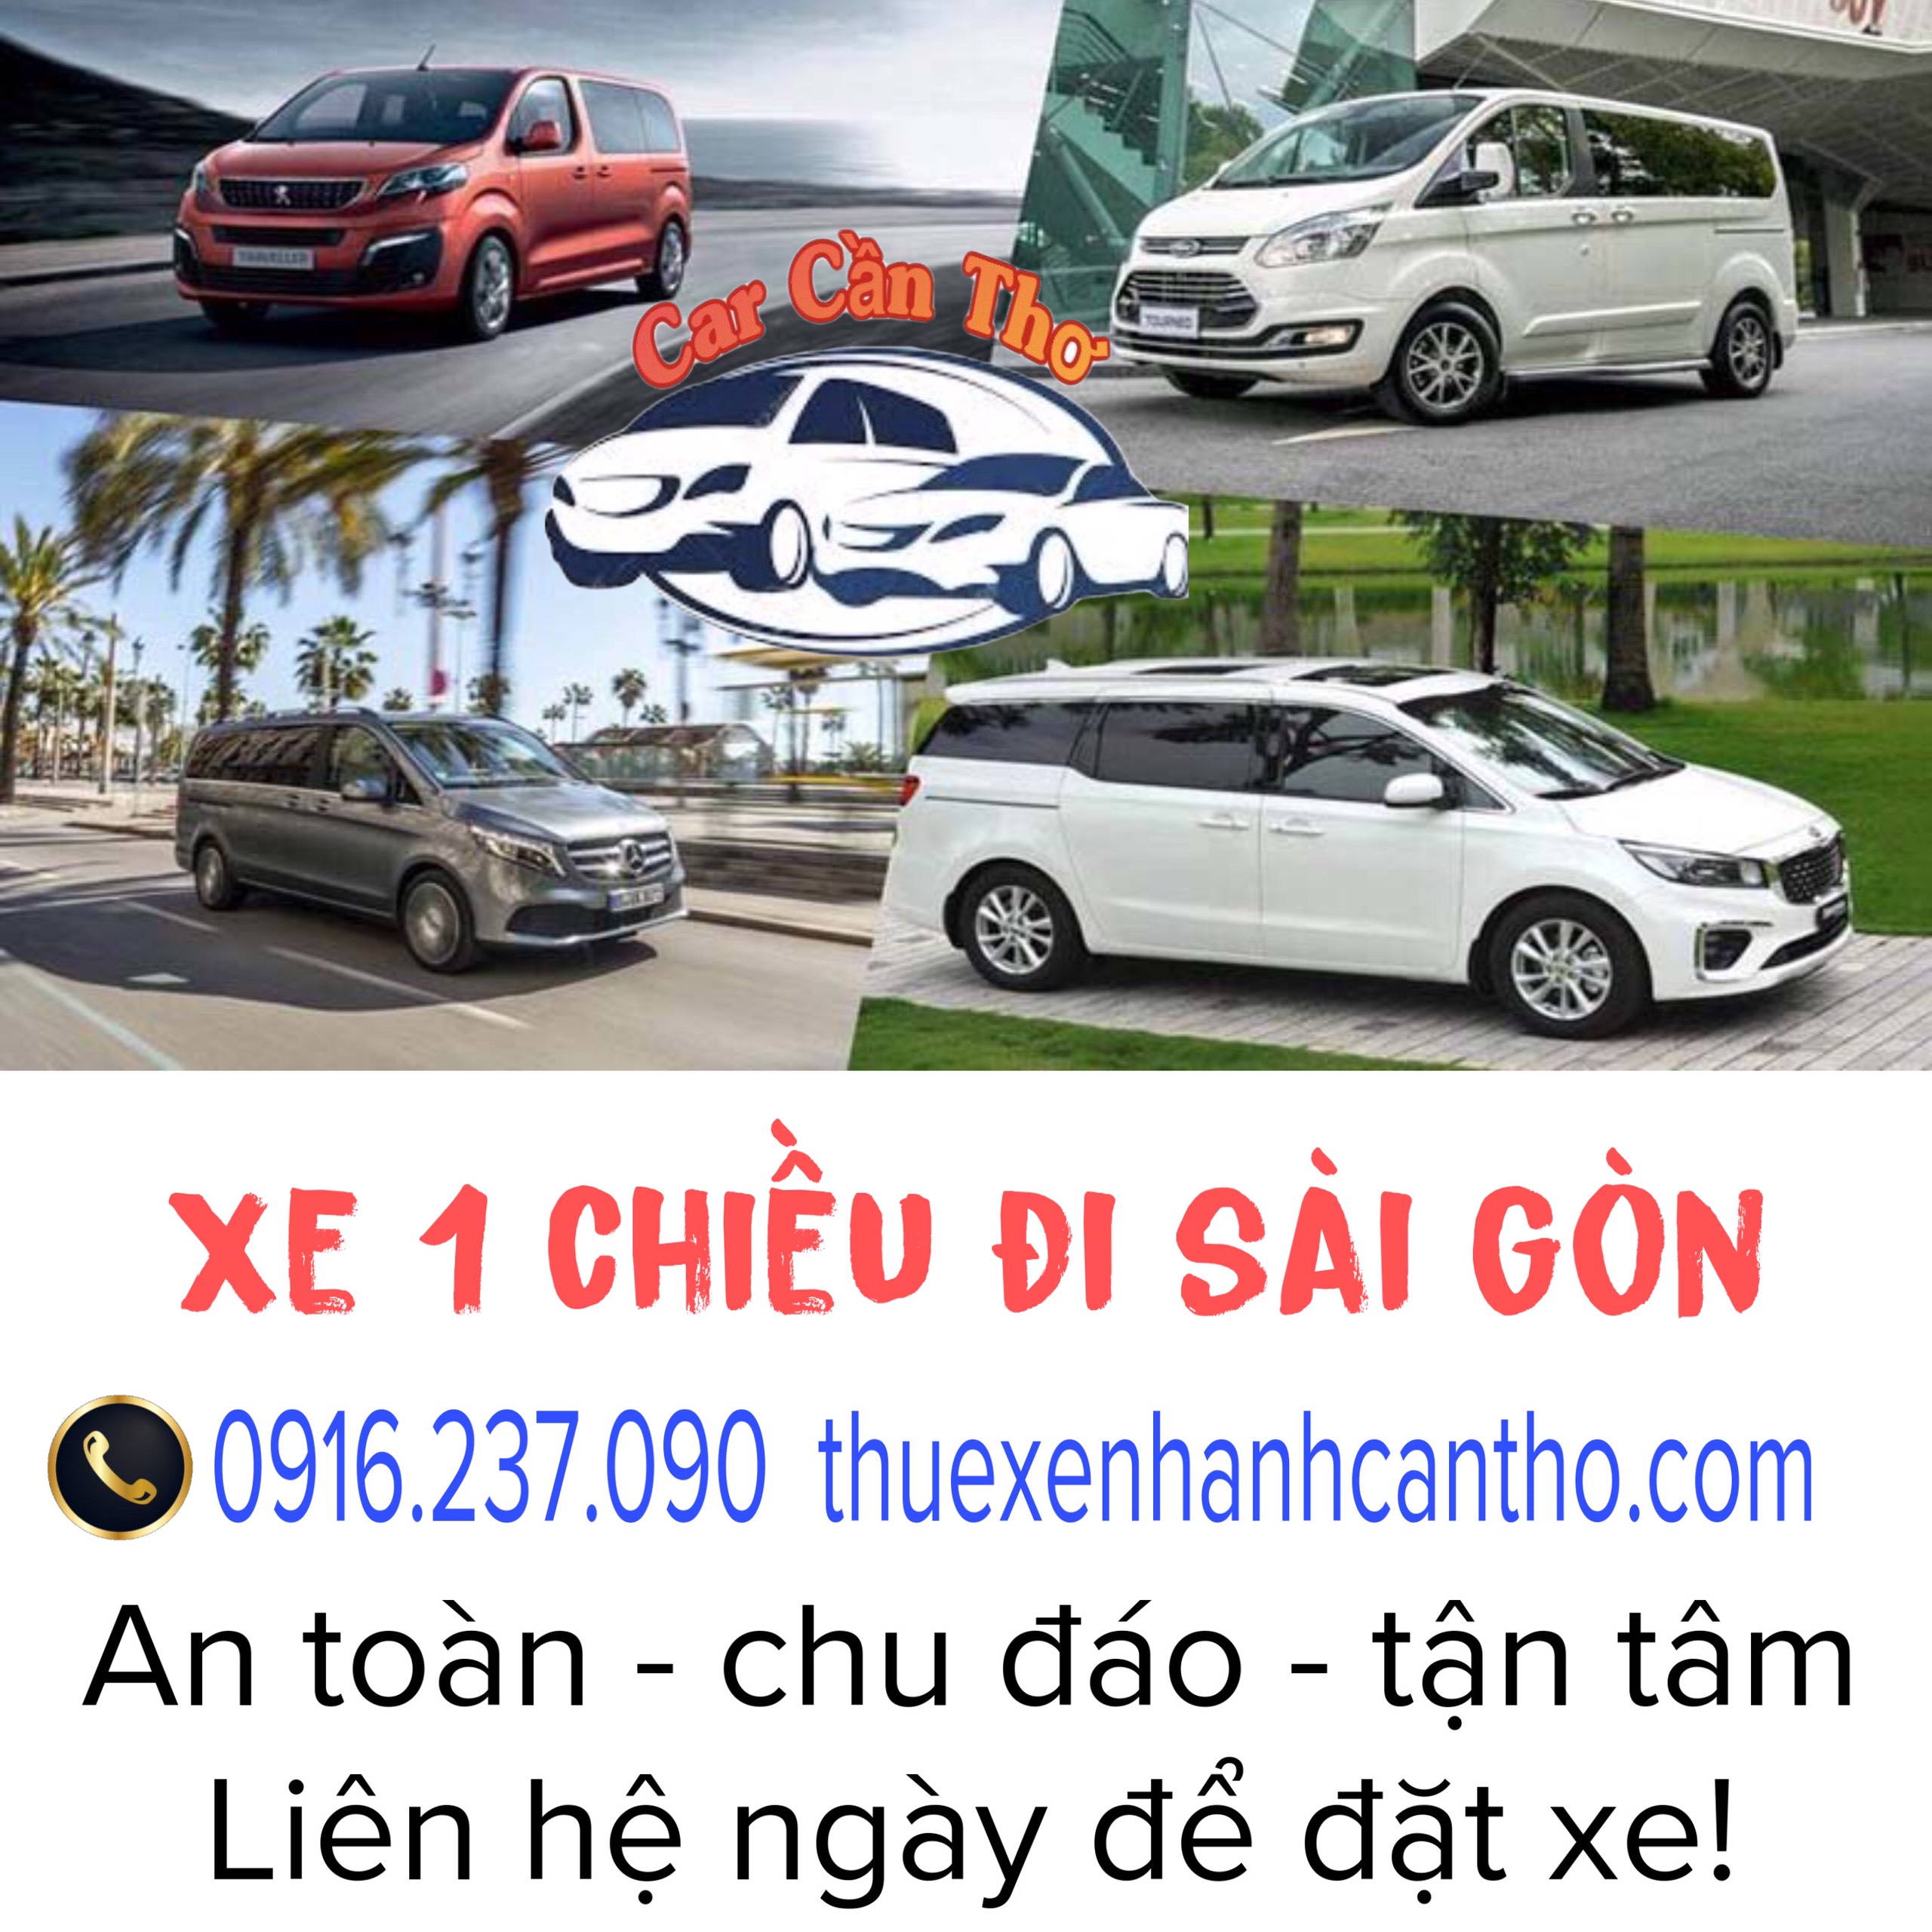 Top Xe 1 Chiều Cần Thơ đi Sài Gòn giá rẻ